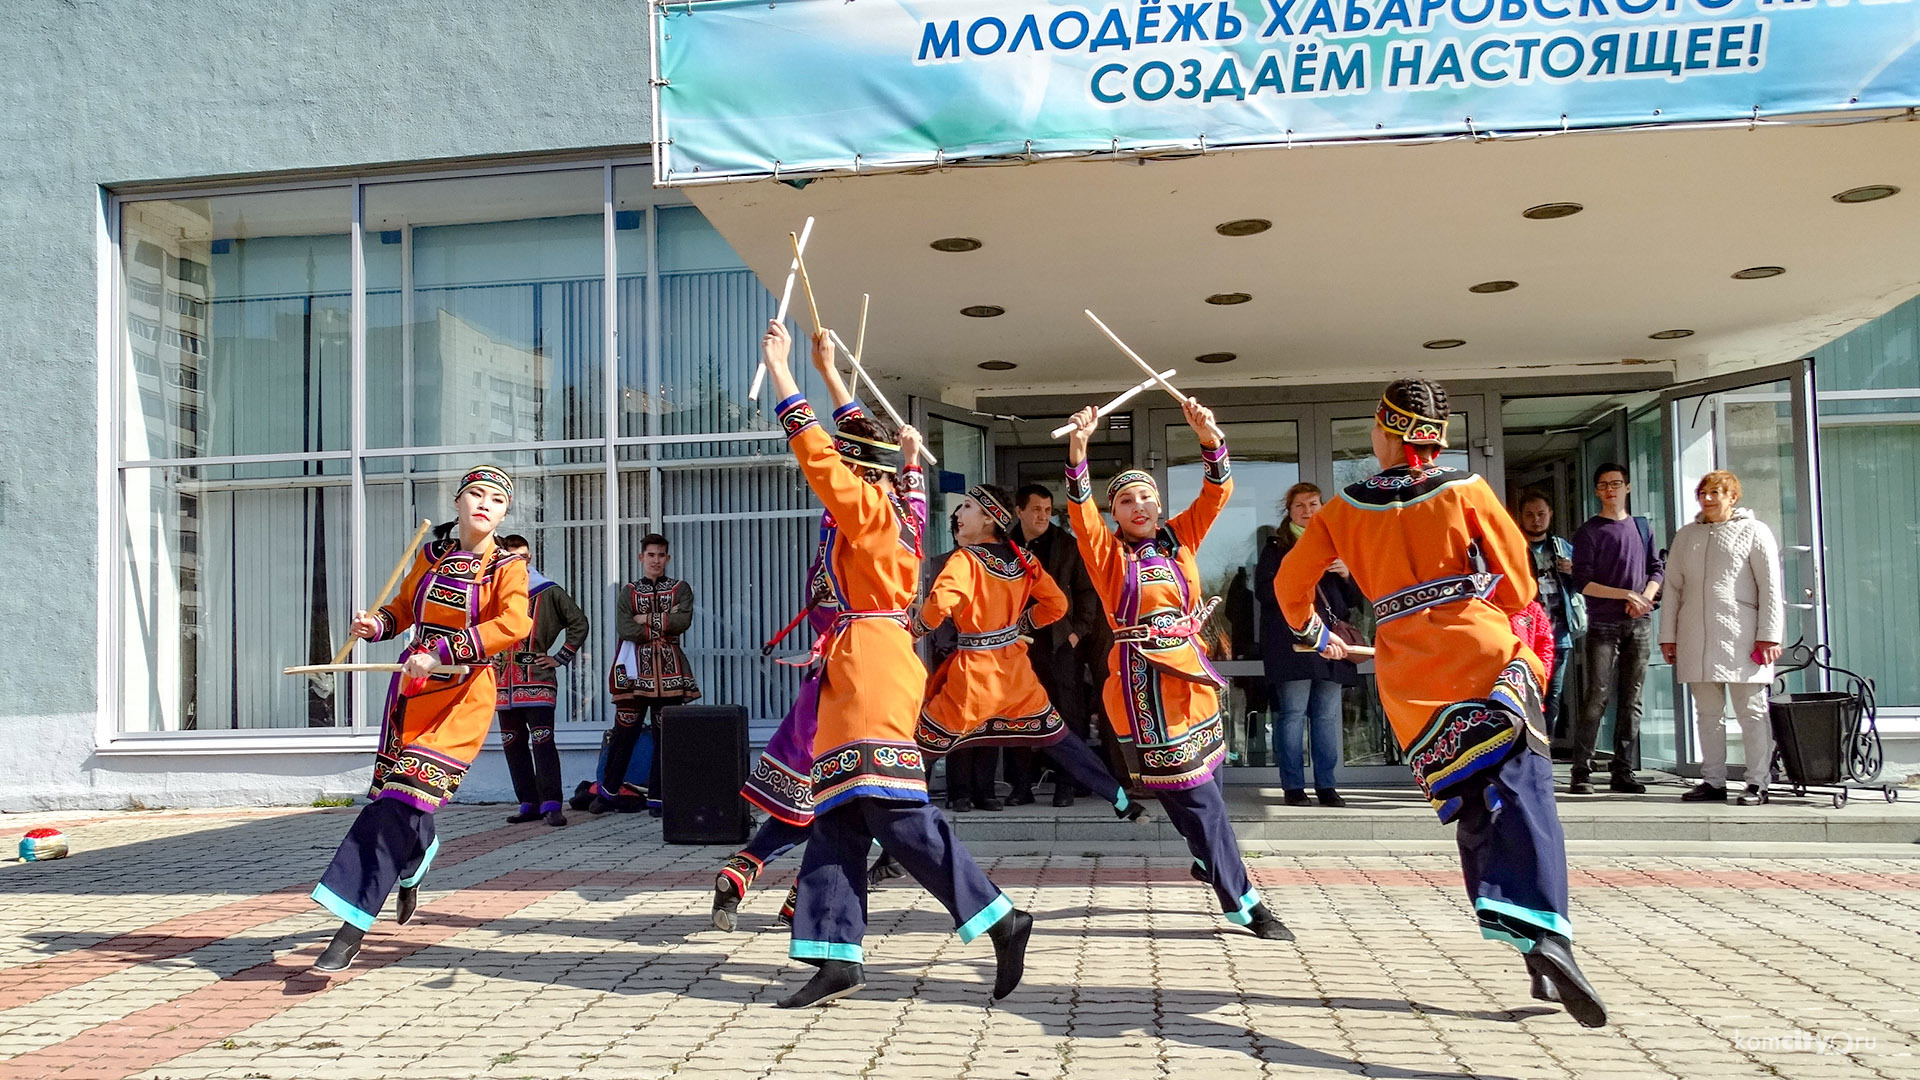 Ярмарка нанайской культуры в Комсомольске-на-Амуре запомнилась нарисованными бородами и прыжками через канат